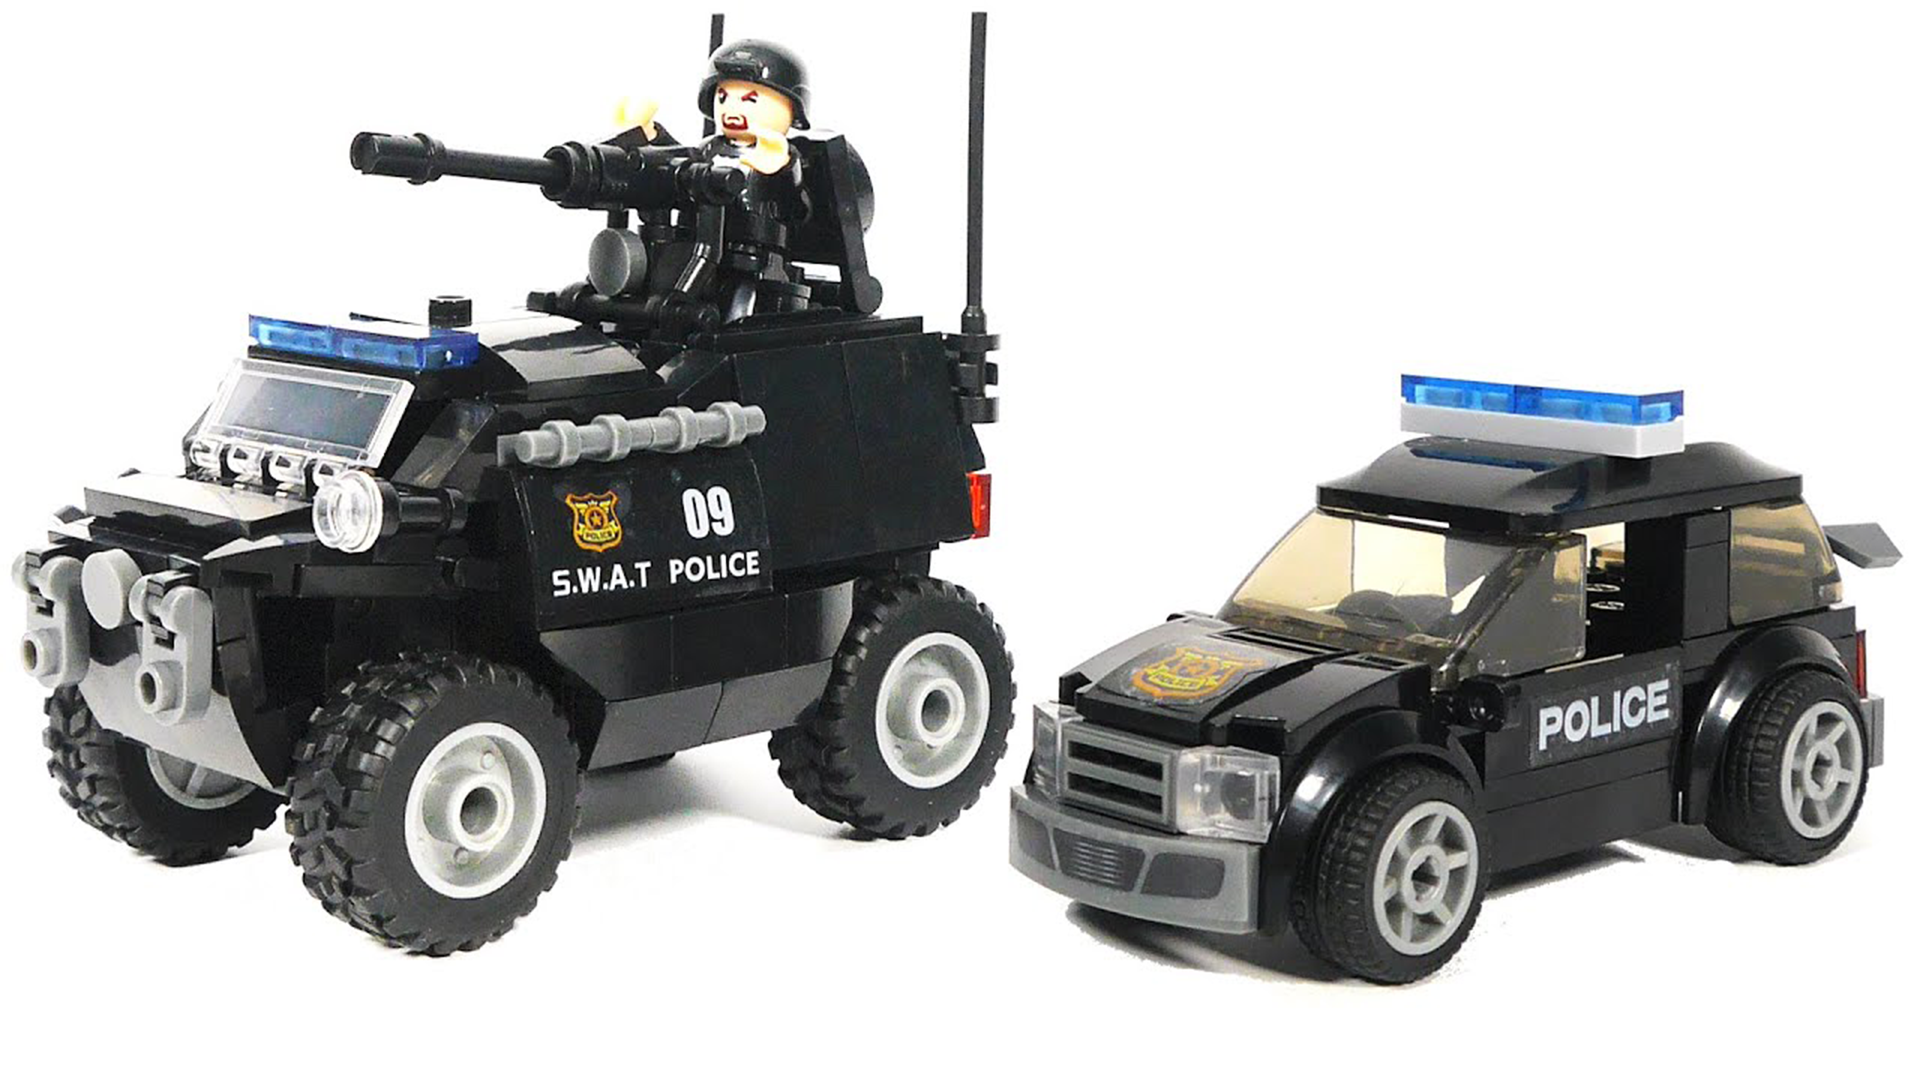 Klocki Policja JEEP i Radiowóz S.W.A.T. + 2 Pojazdy Policyjne TOMDORIX